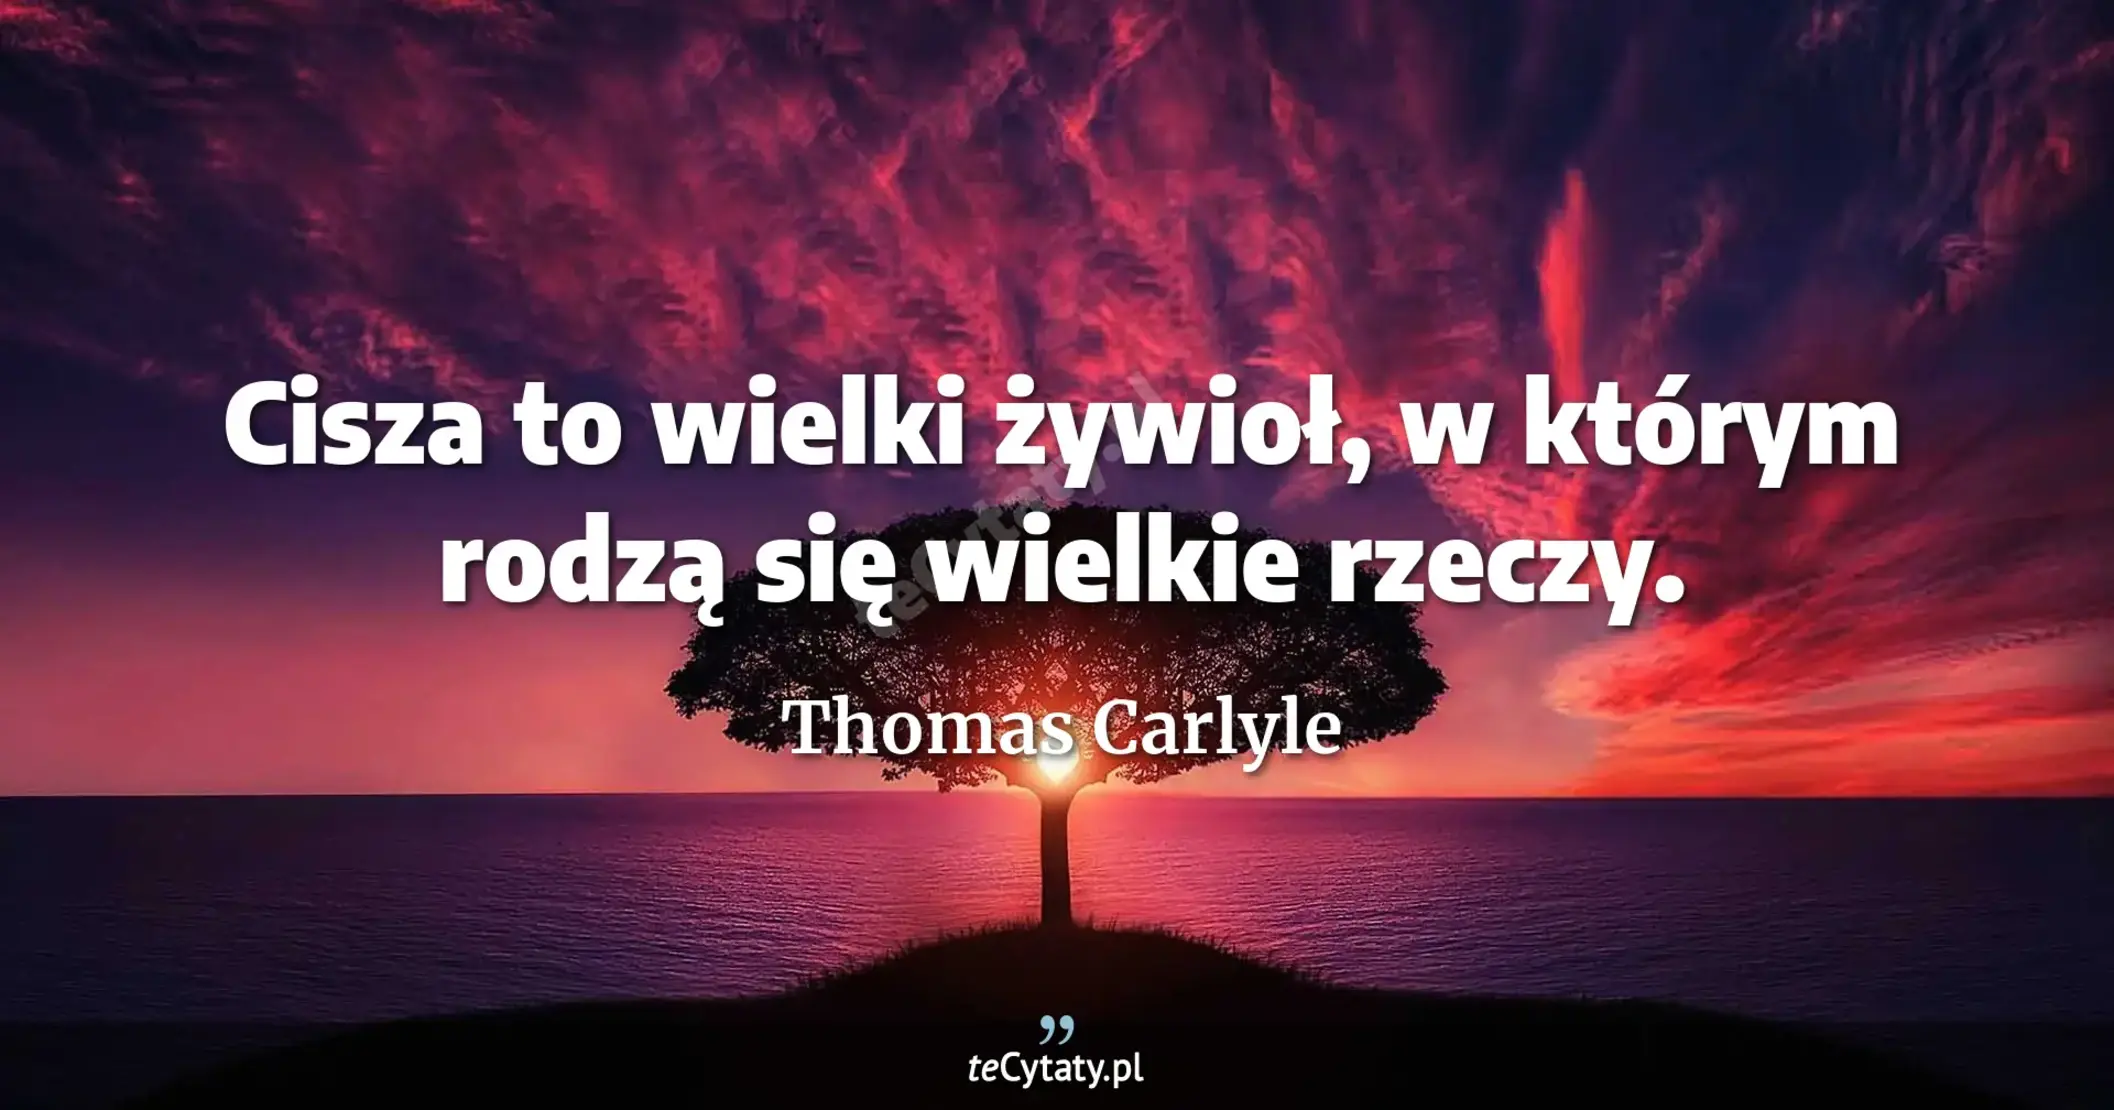 Cisza to wielki żywioł, w którym rodzą się wielkie rzeczy. - Thomas Carlyle